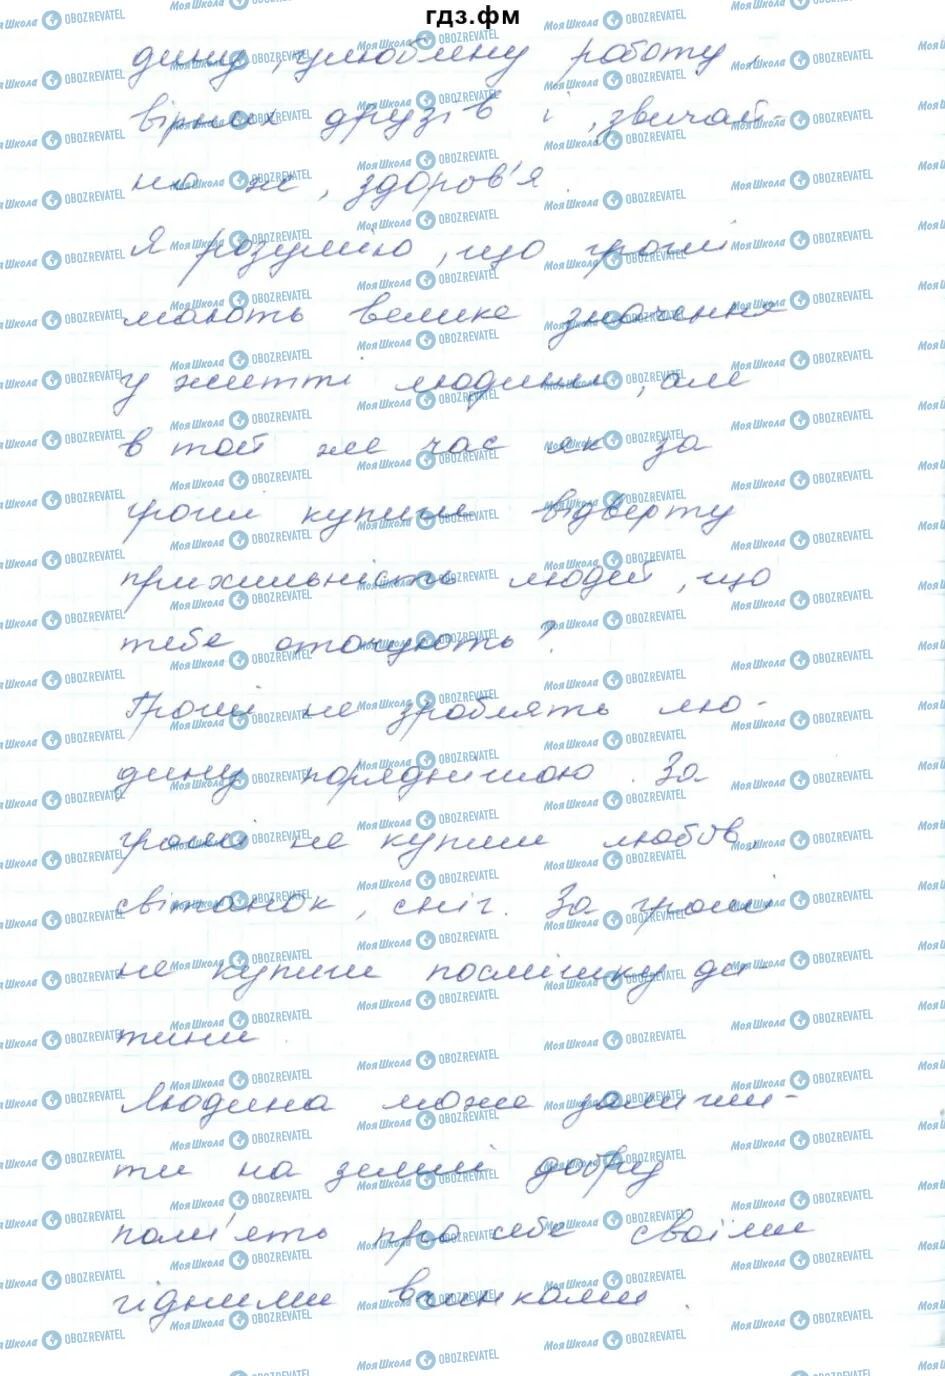 ГДЗ Українська мова 5 клас сторінка 573